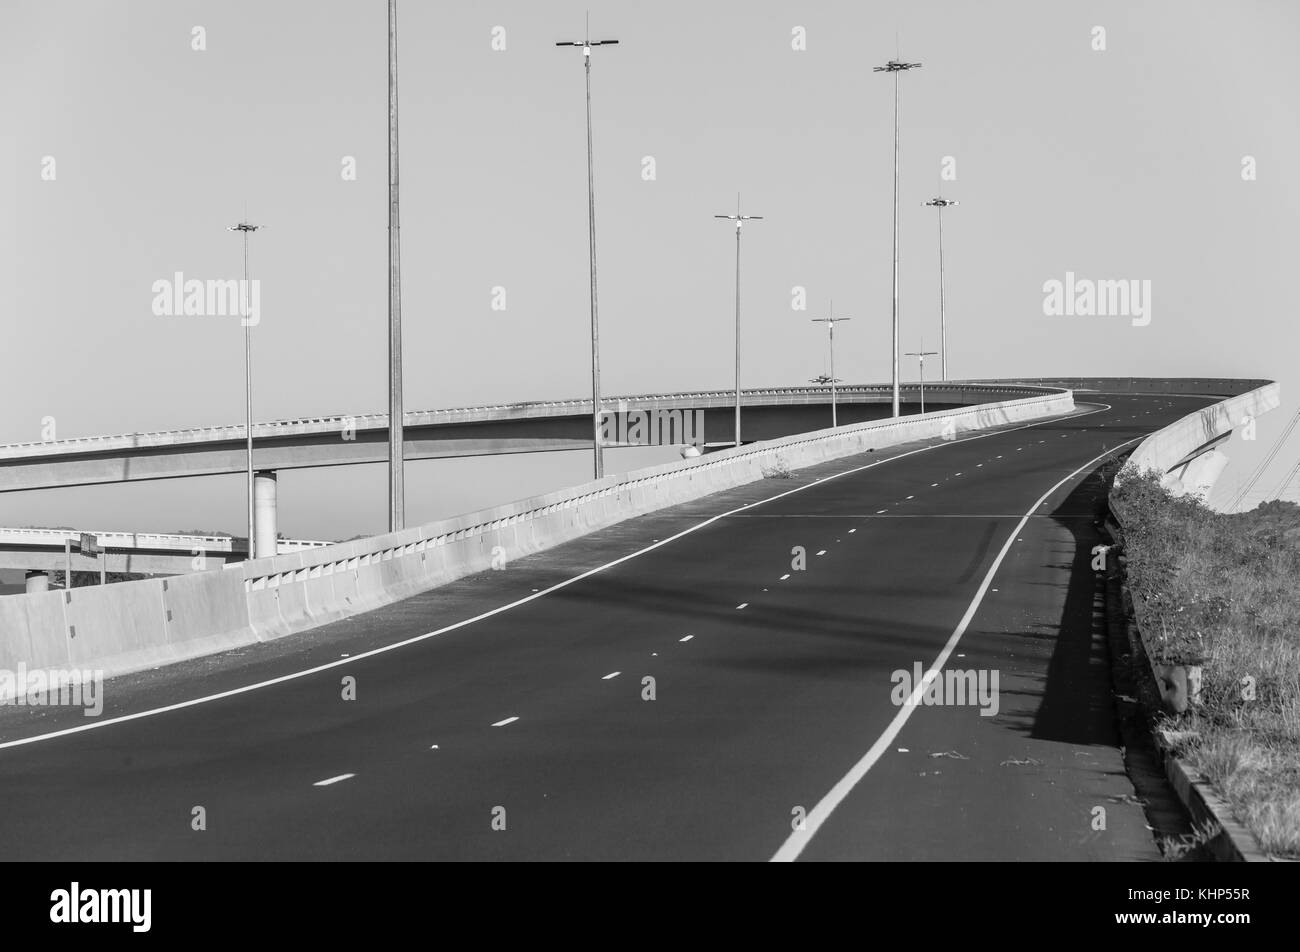 Sobrecarga de la autopista Carretera flyover rampa de entrada y salida de las estructuras en blanco y negro. Foto de stock